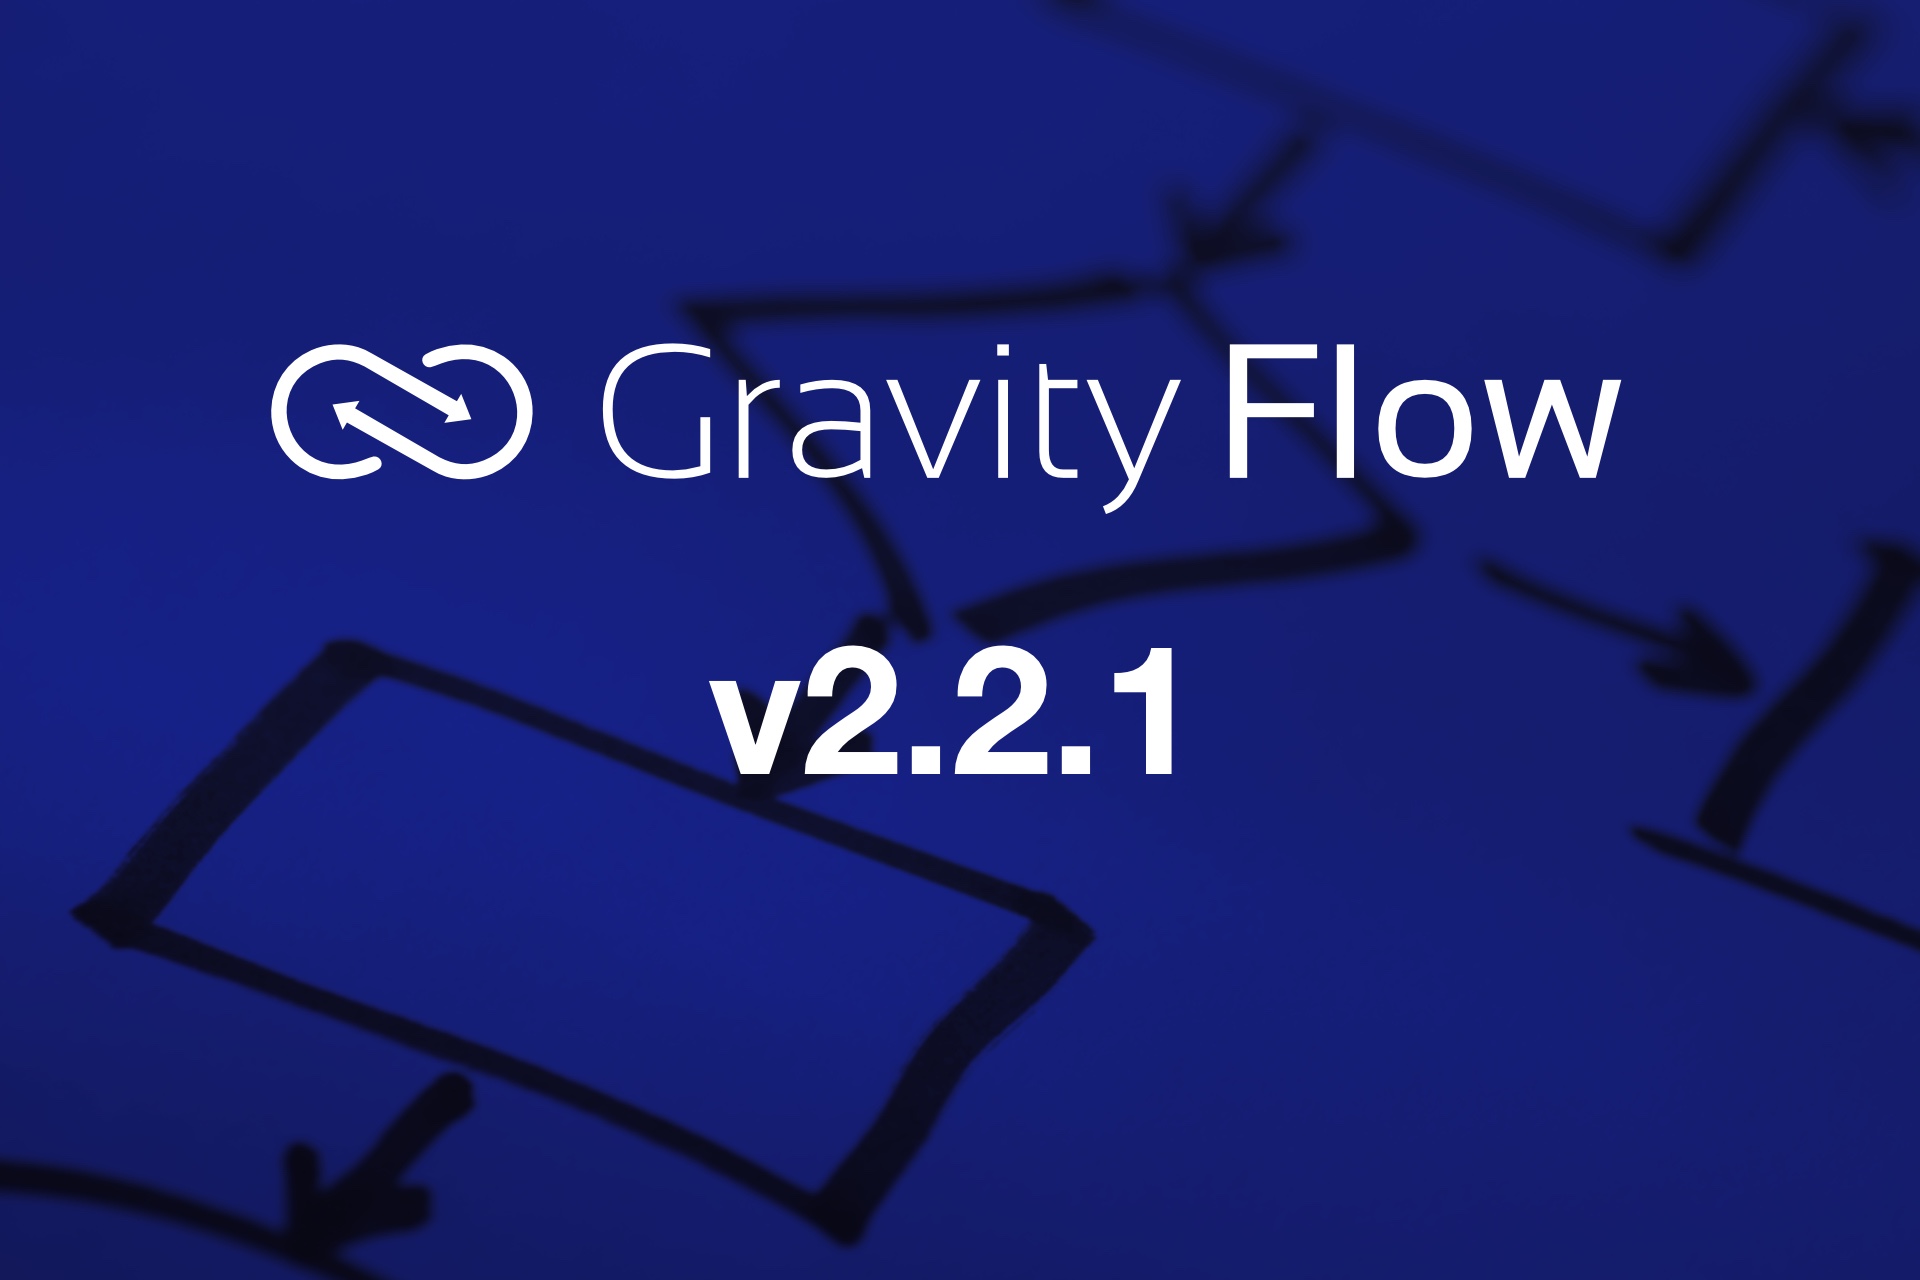 Gravity Flow v2.2.1 Released